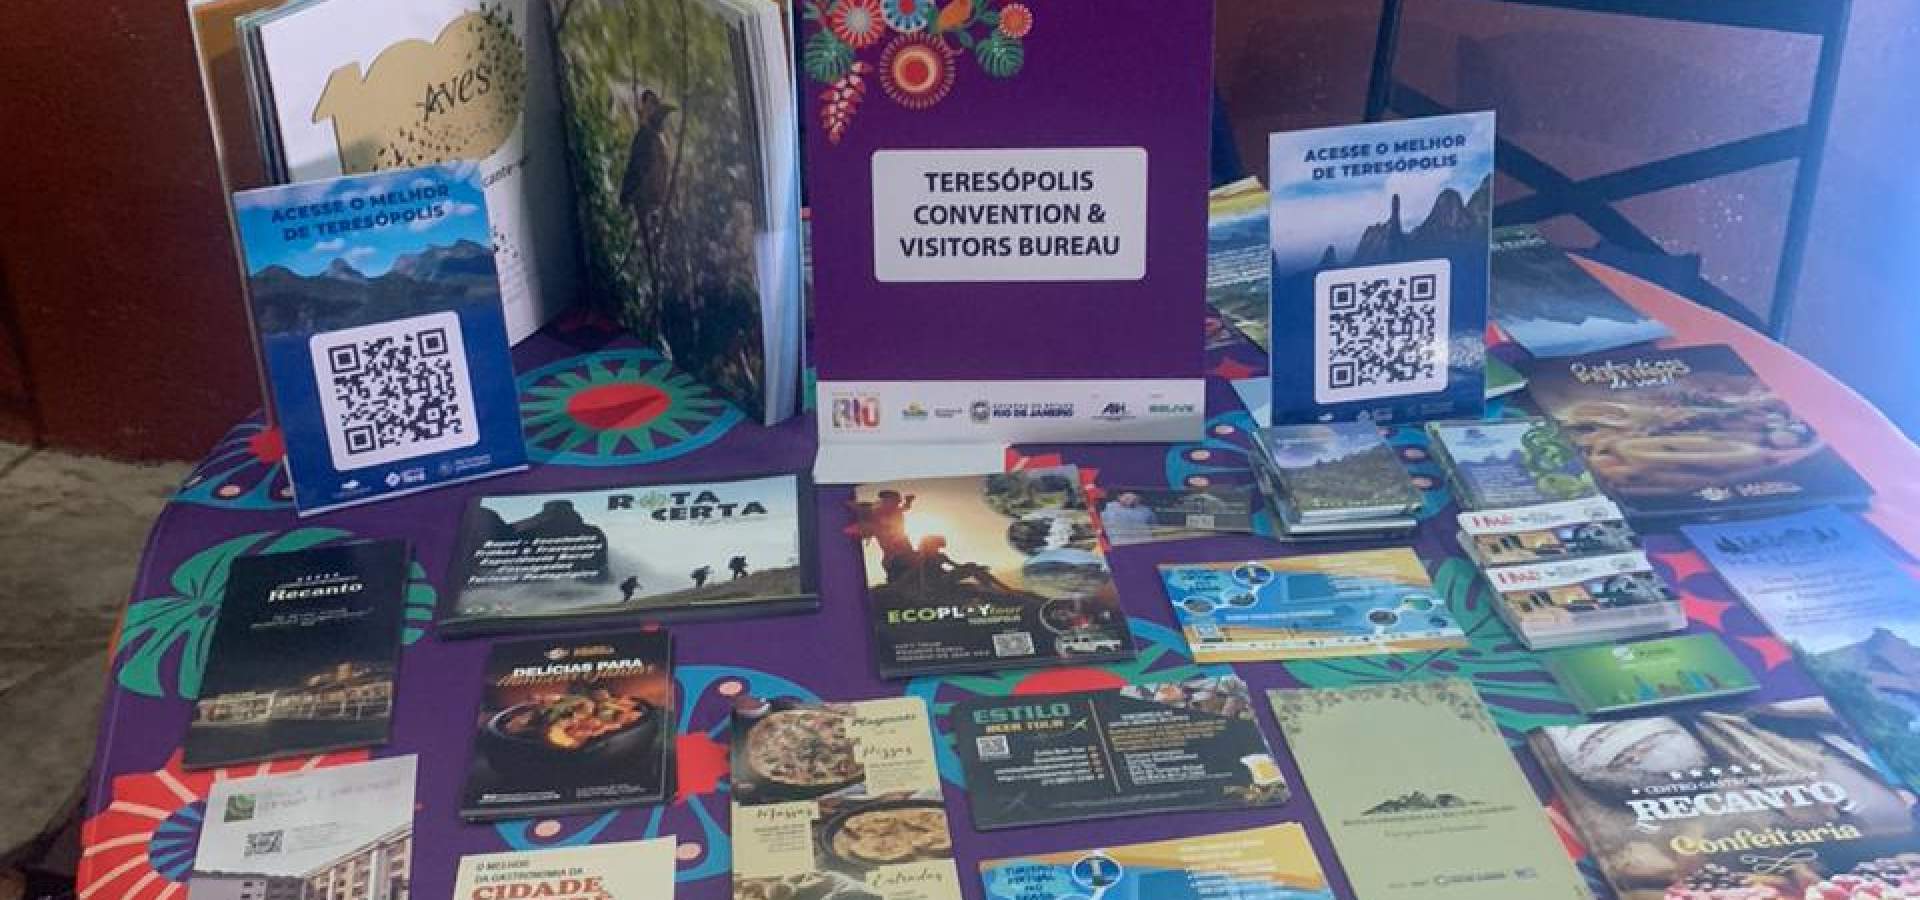 Teresópolis Convention & Visitors Bureau destaca potencial turístico do Rio de Janeiro em importantes eventos